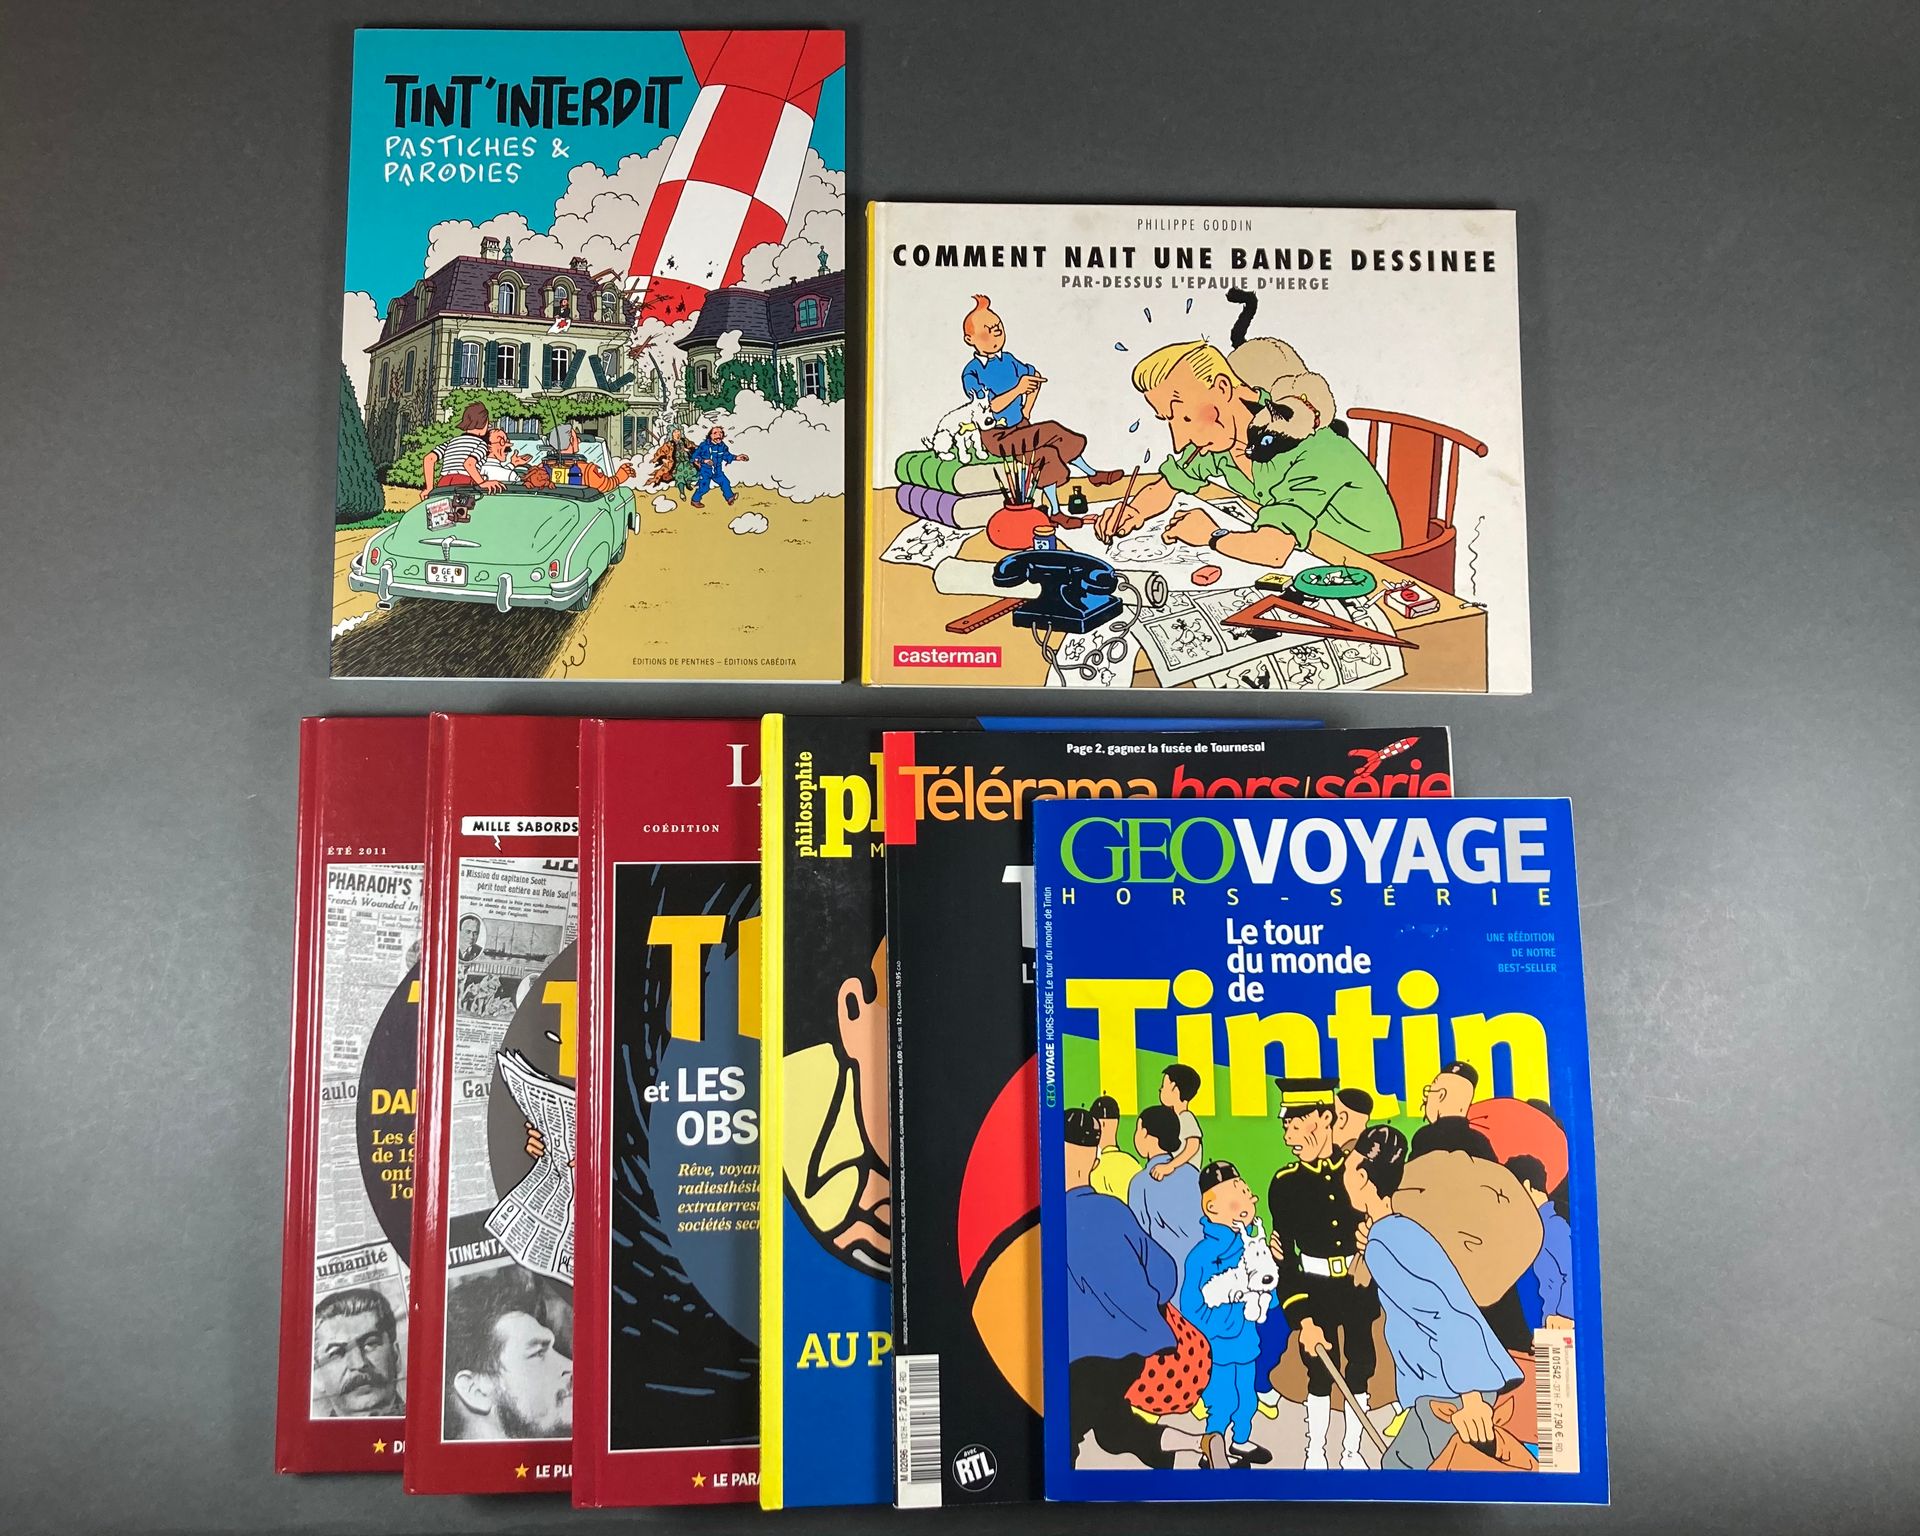 Hergé - Tintin Von AJ Tornare, Tint'interdit, Pastiches et parodies, seltene unz&hellip;